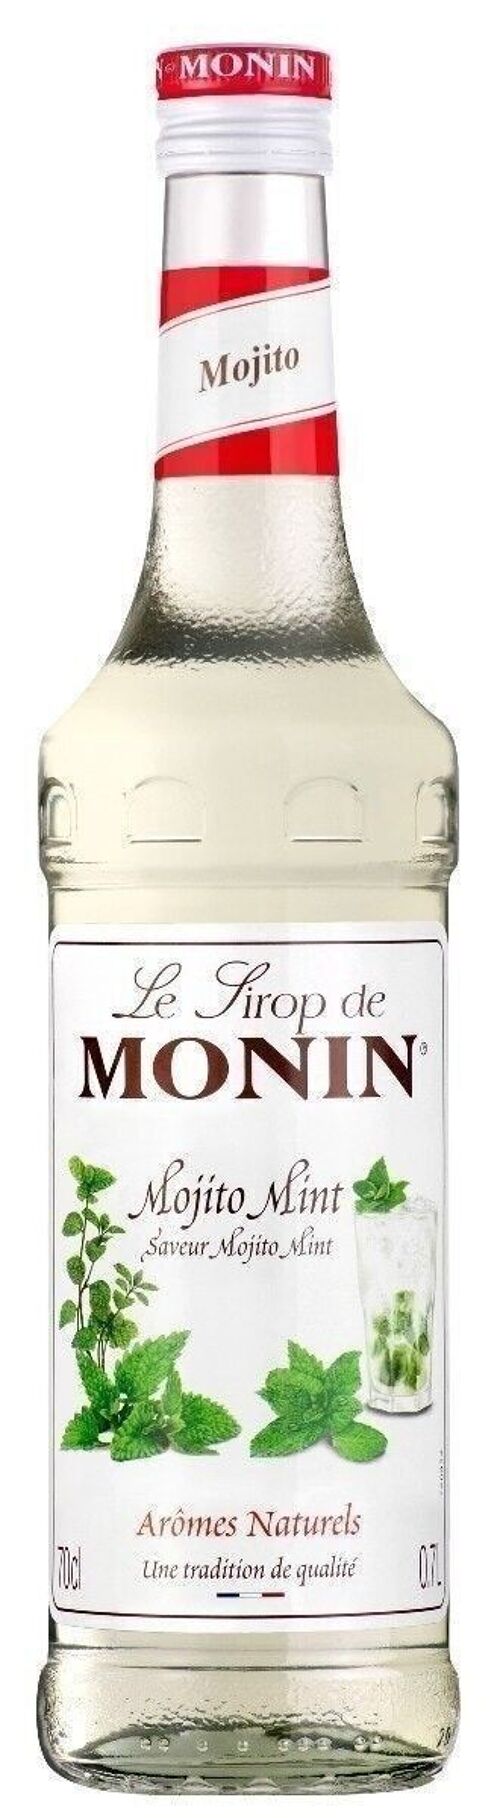 Sirop de Mojito Mint MONIN - Arômes naturels - 70cl